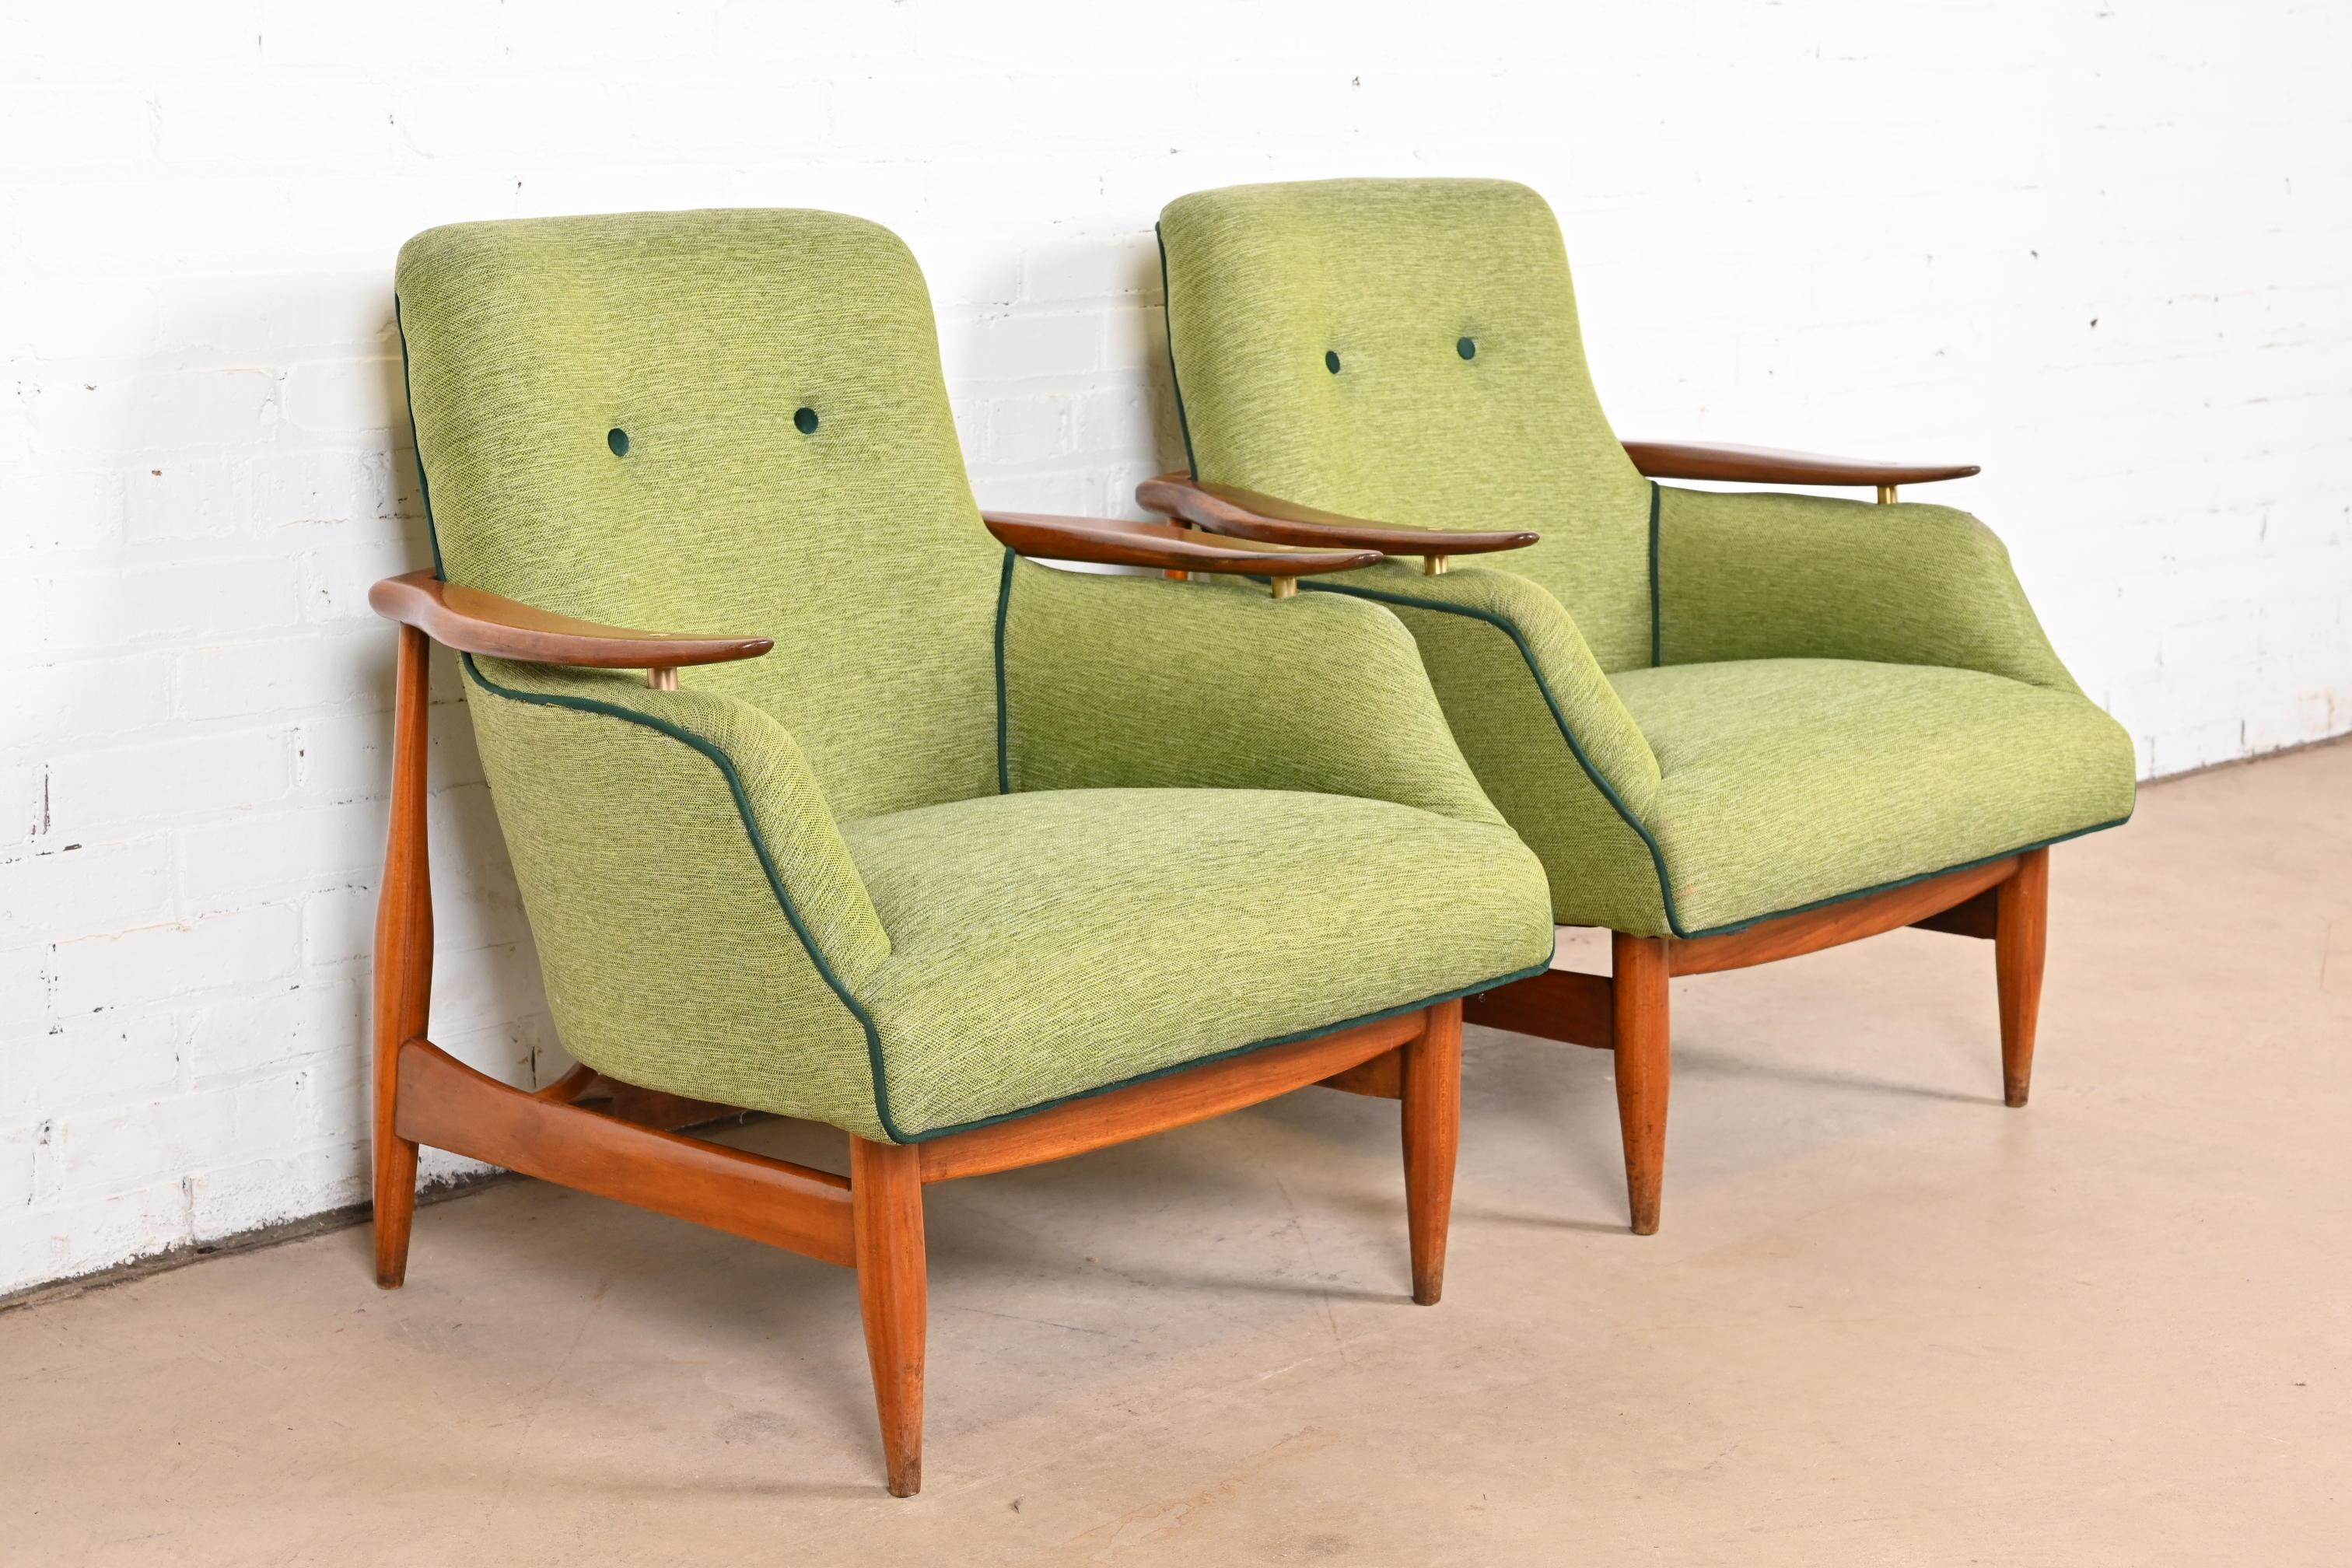 Finn Juhl Danish Modern Upholstered Teak Lounge Chairs, Pair For Sale 1